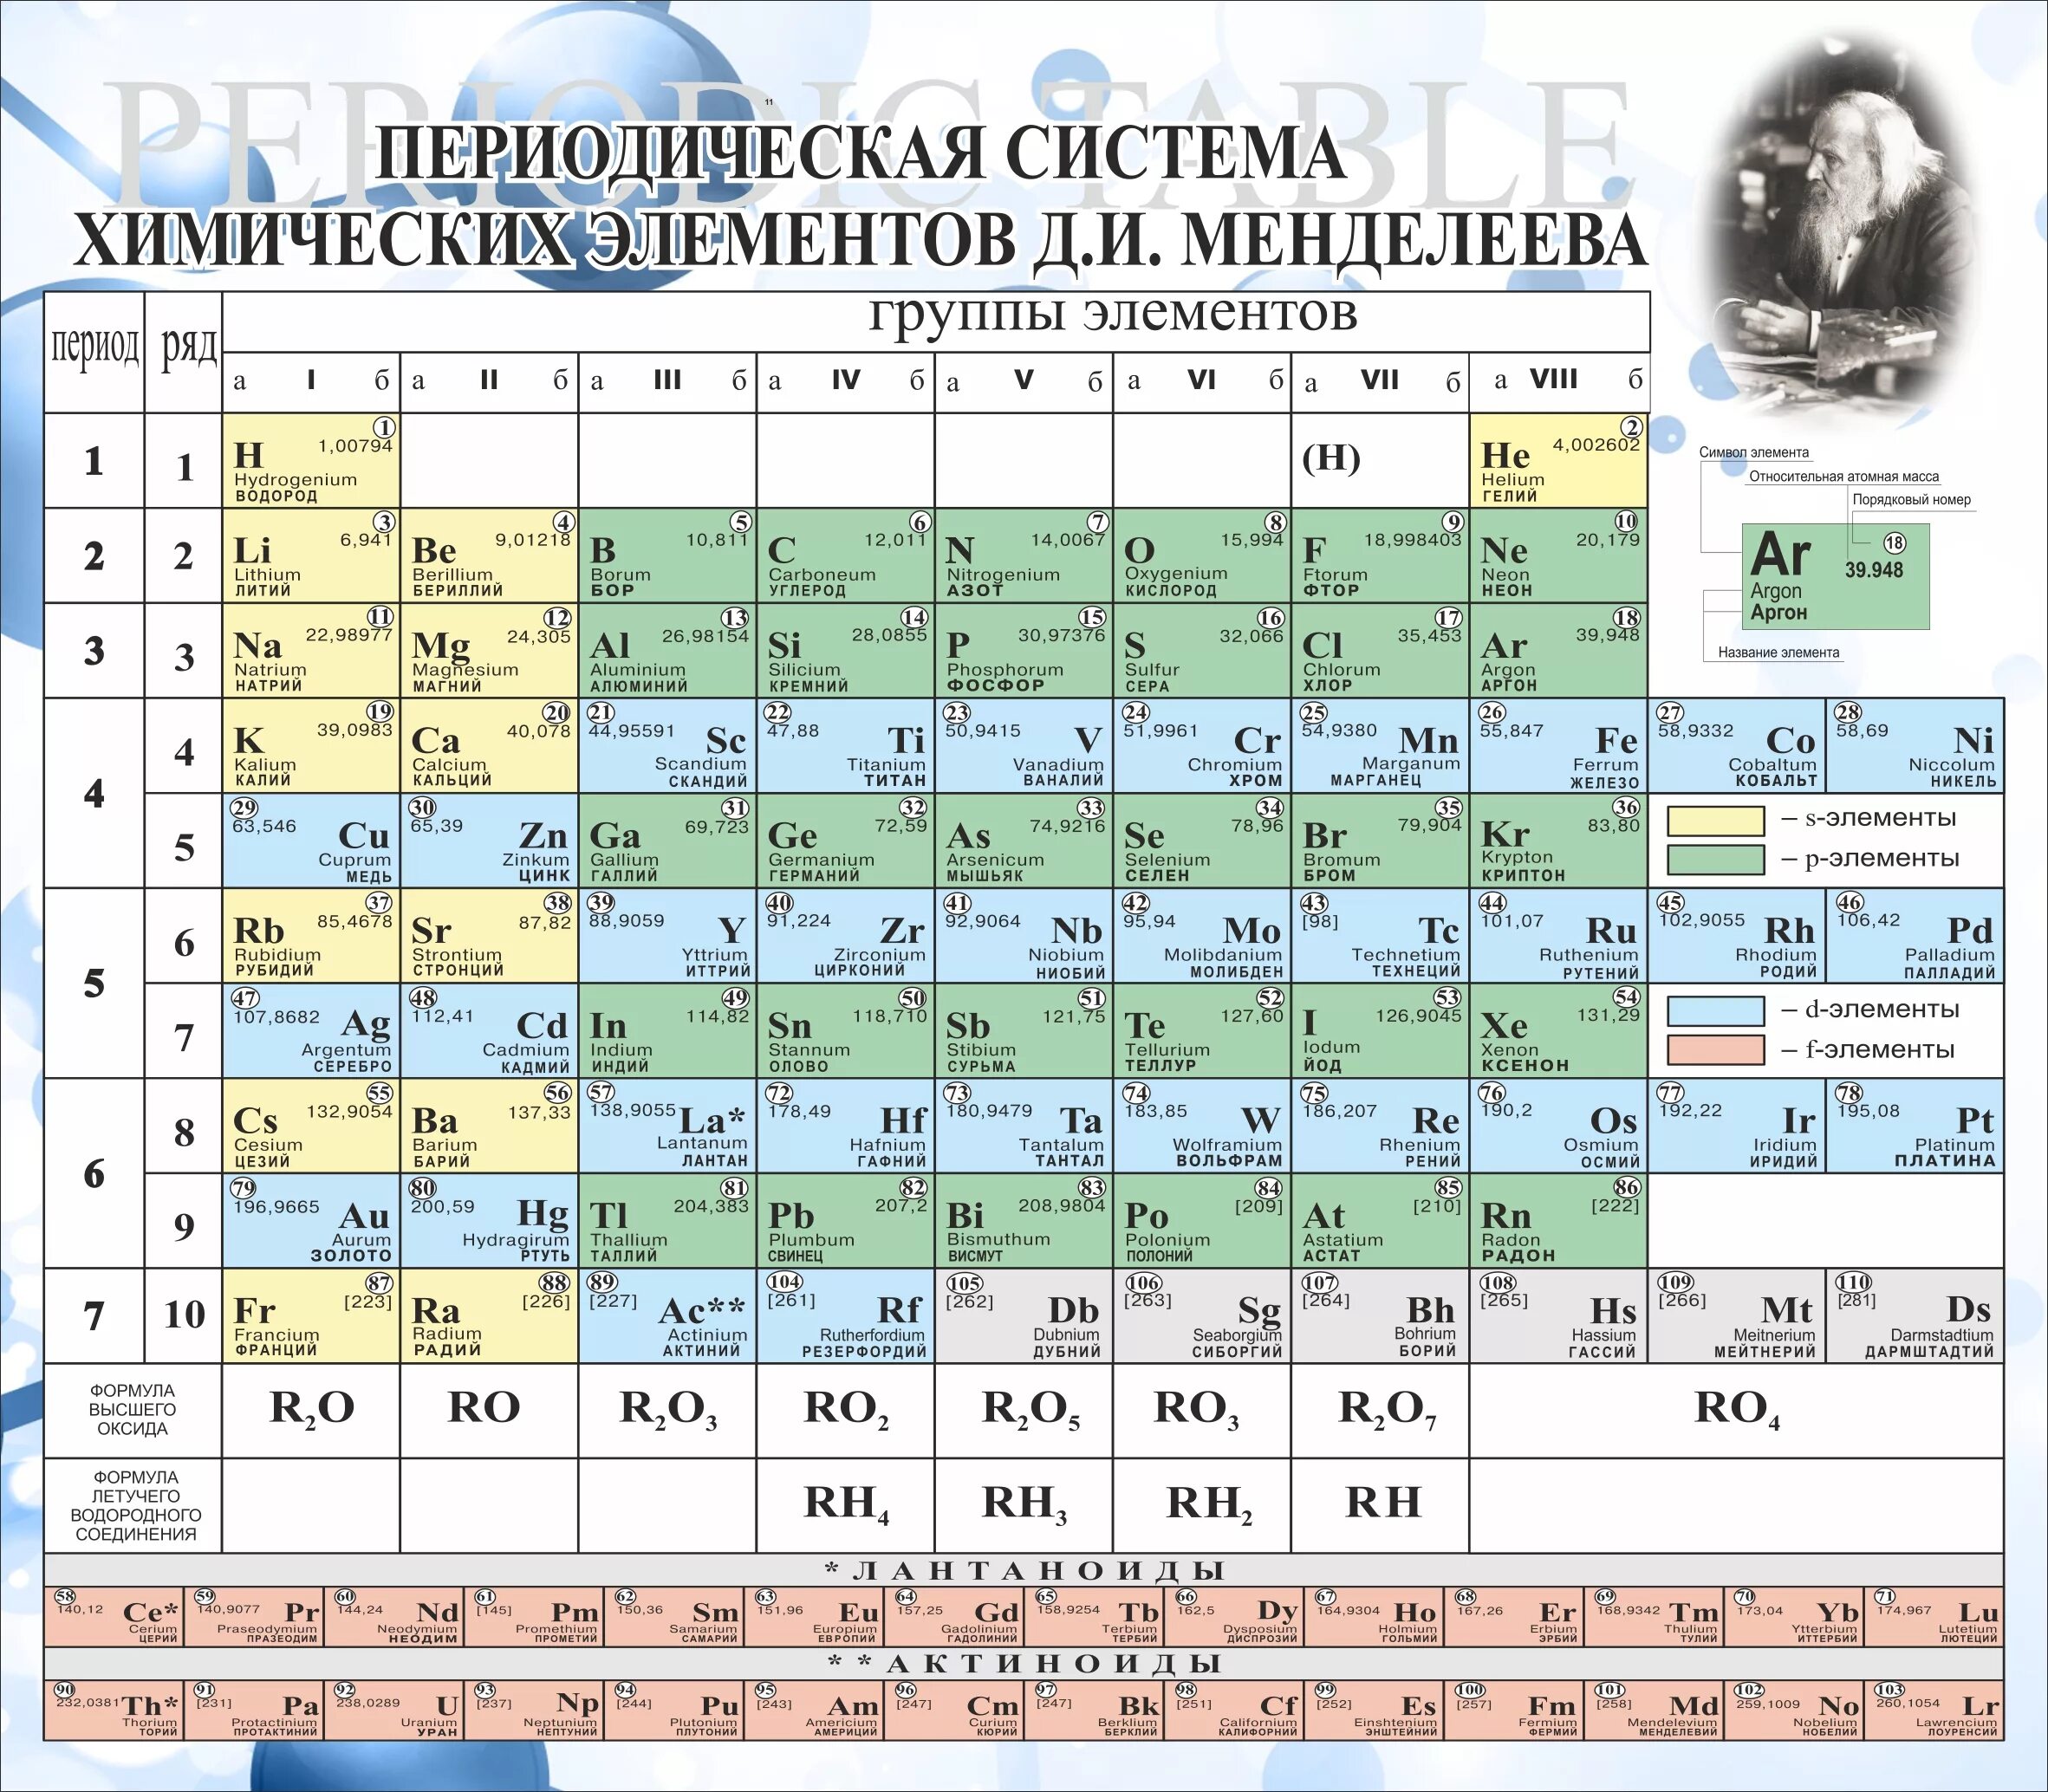 Периодическая система брома. Таблица Менделеева с названиями химических элементов. Произношение хим элементов таблица Менделеева. Периодическая система химических элементов Менделеева 118 элементов. 20 Элемент таблицы Менделеева.